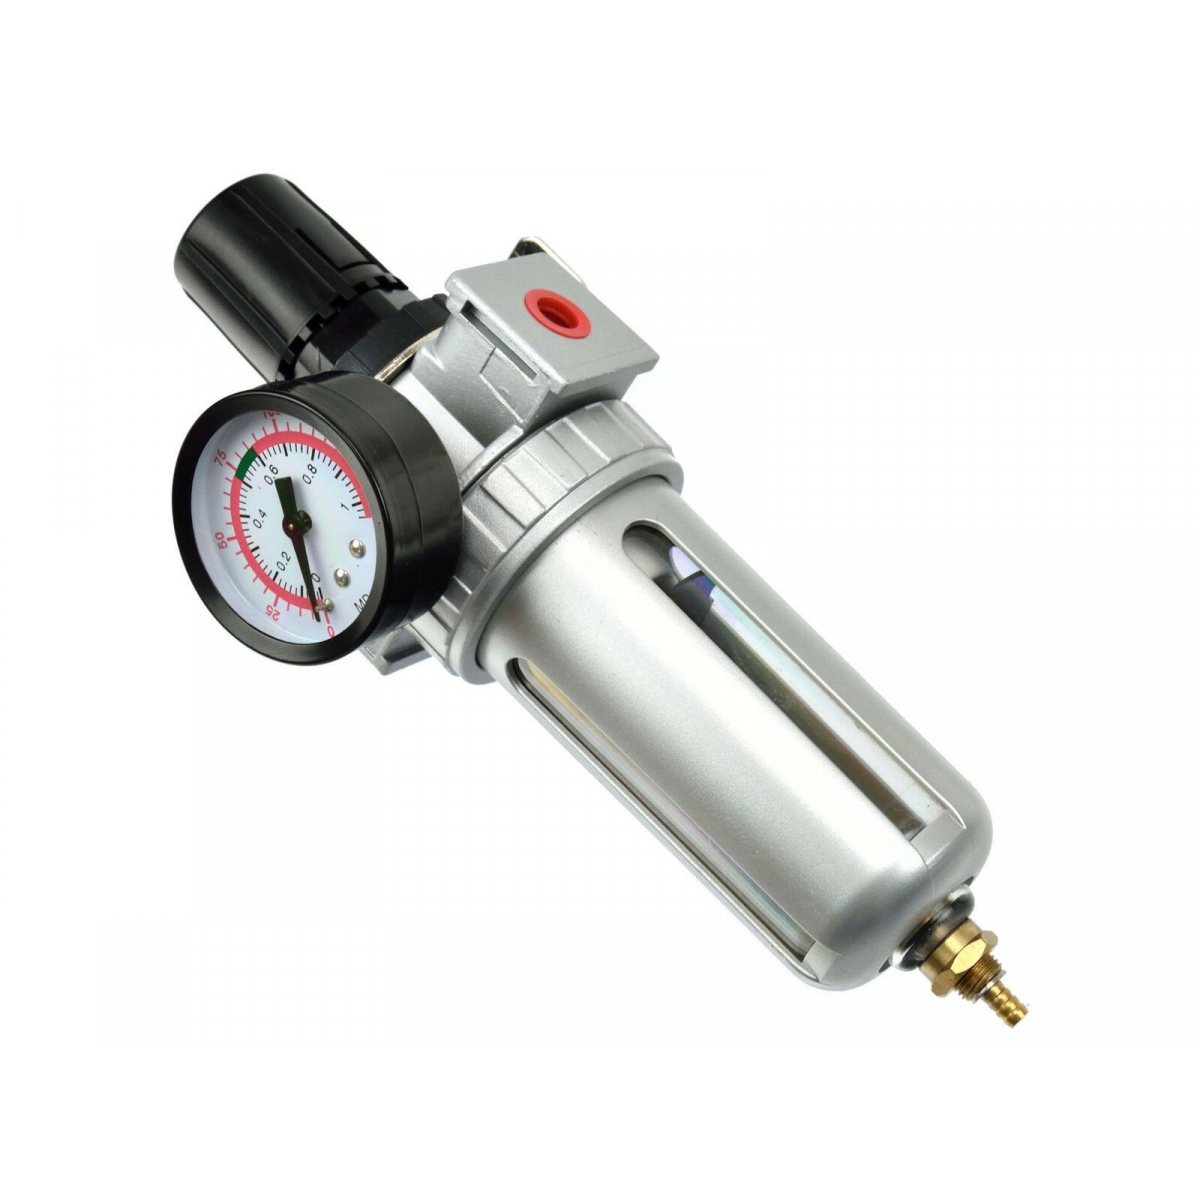 Regulátor tlaku s filtrem a manometrem GEKO, max. prac. tlak 10bar